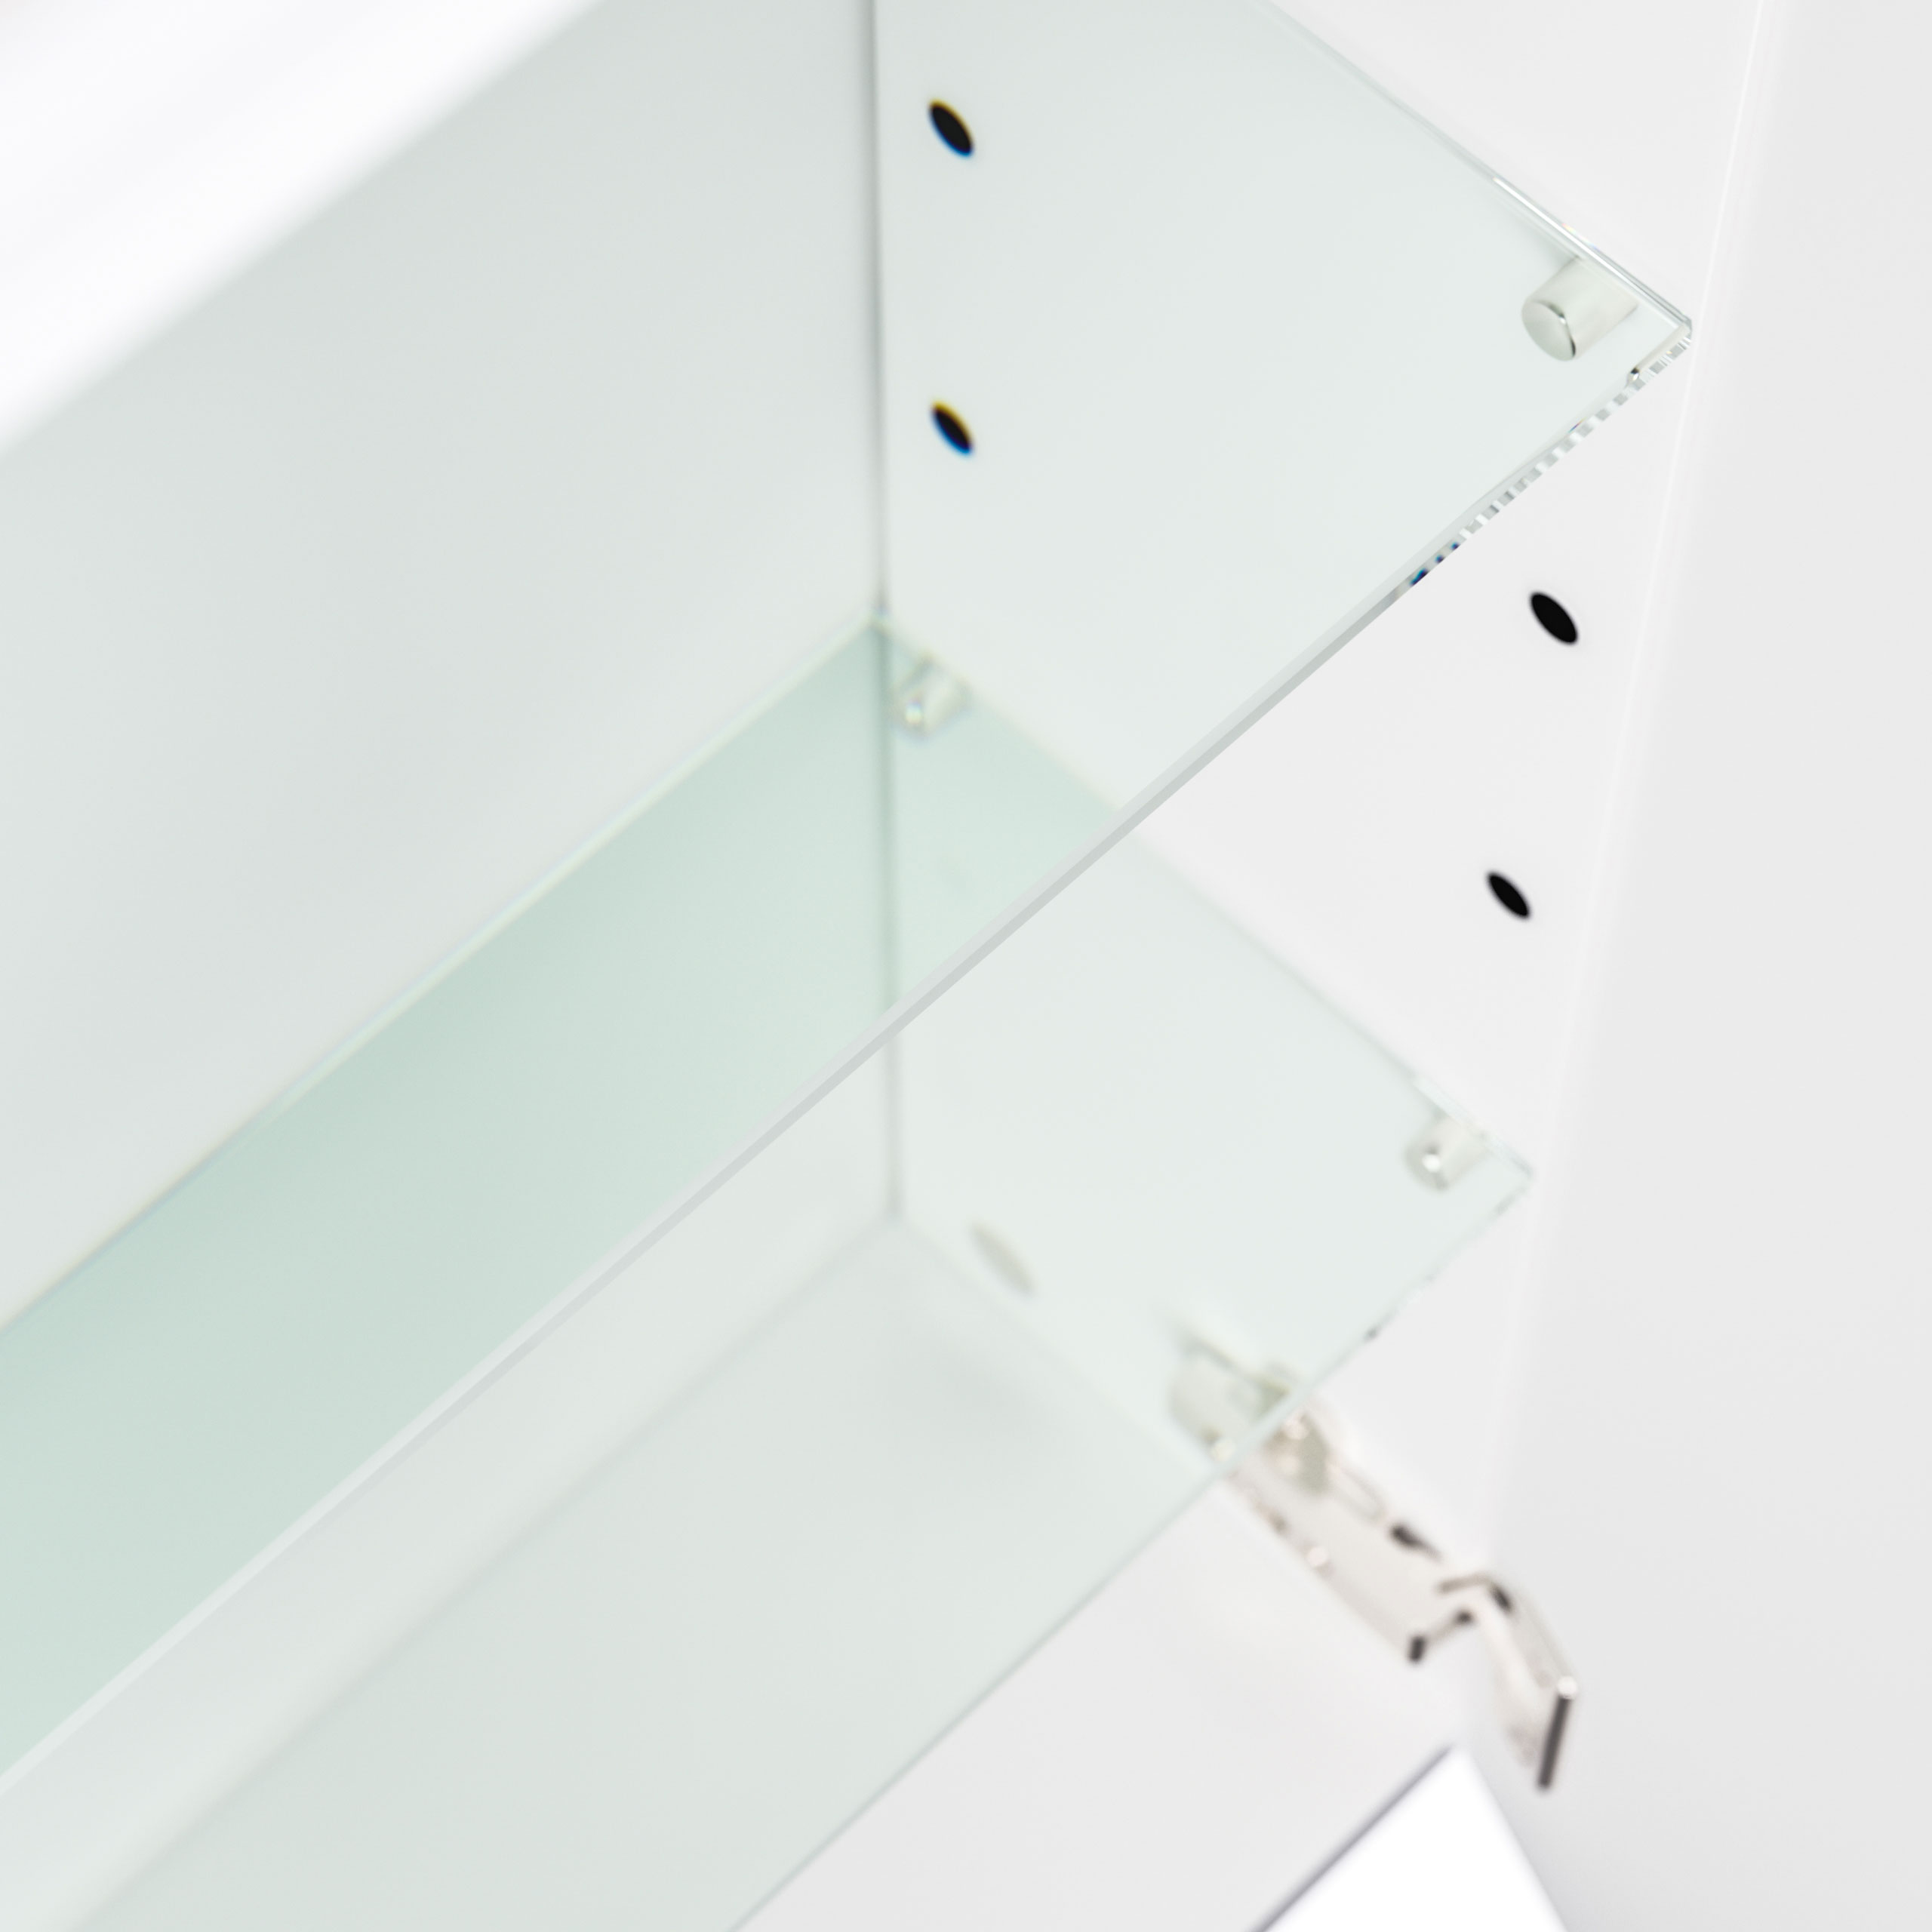 Spiegelschrank 140cm inkl. Design LED-Lampe und Glasböden weiss hochglanz